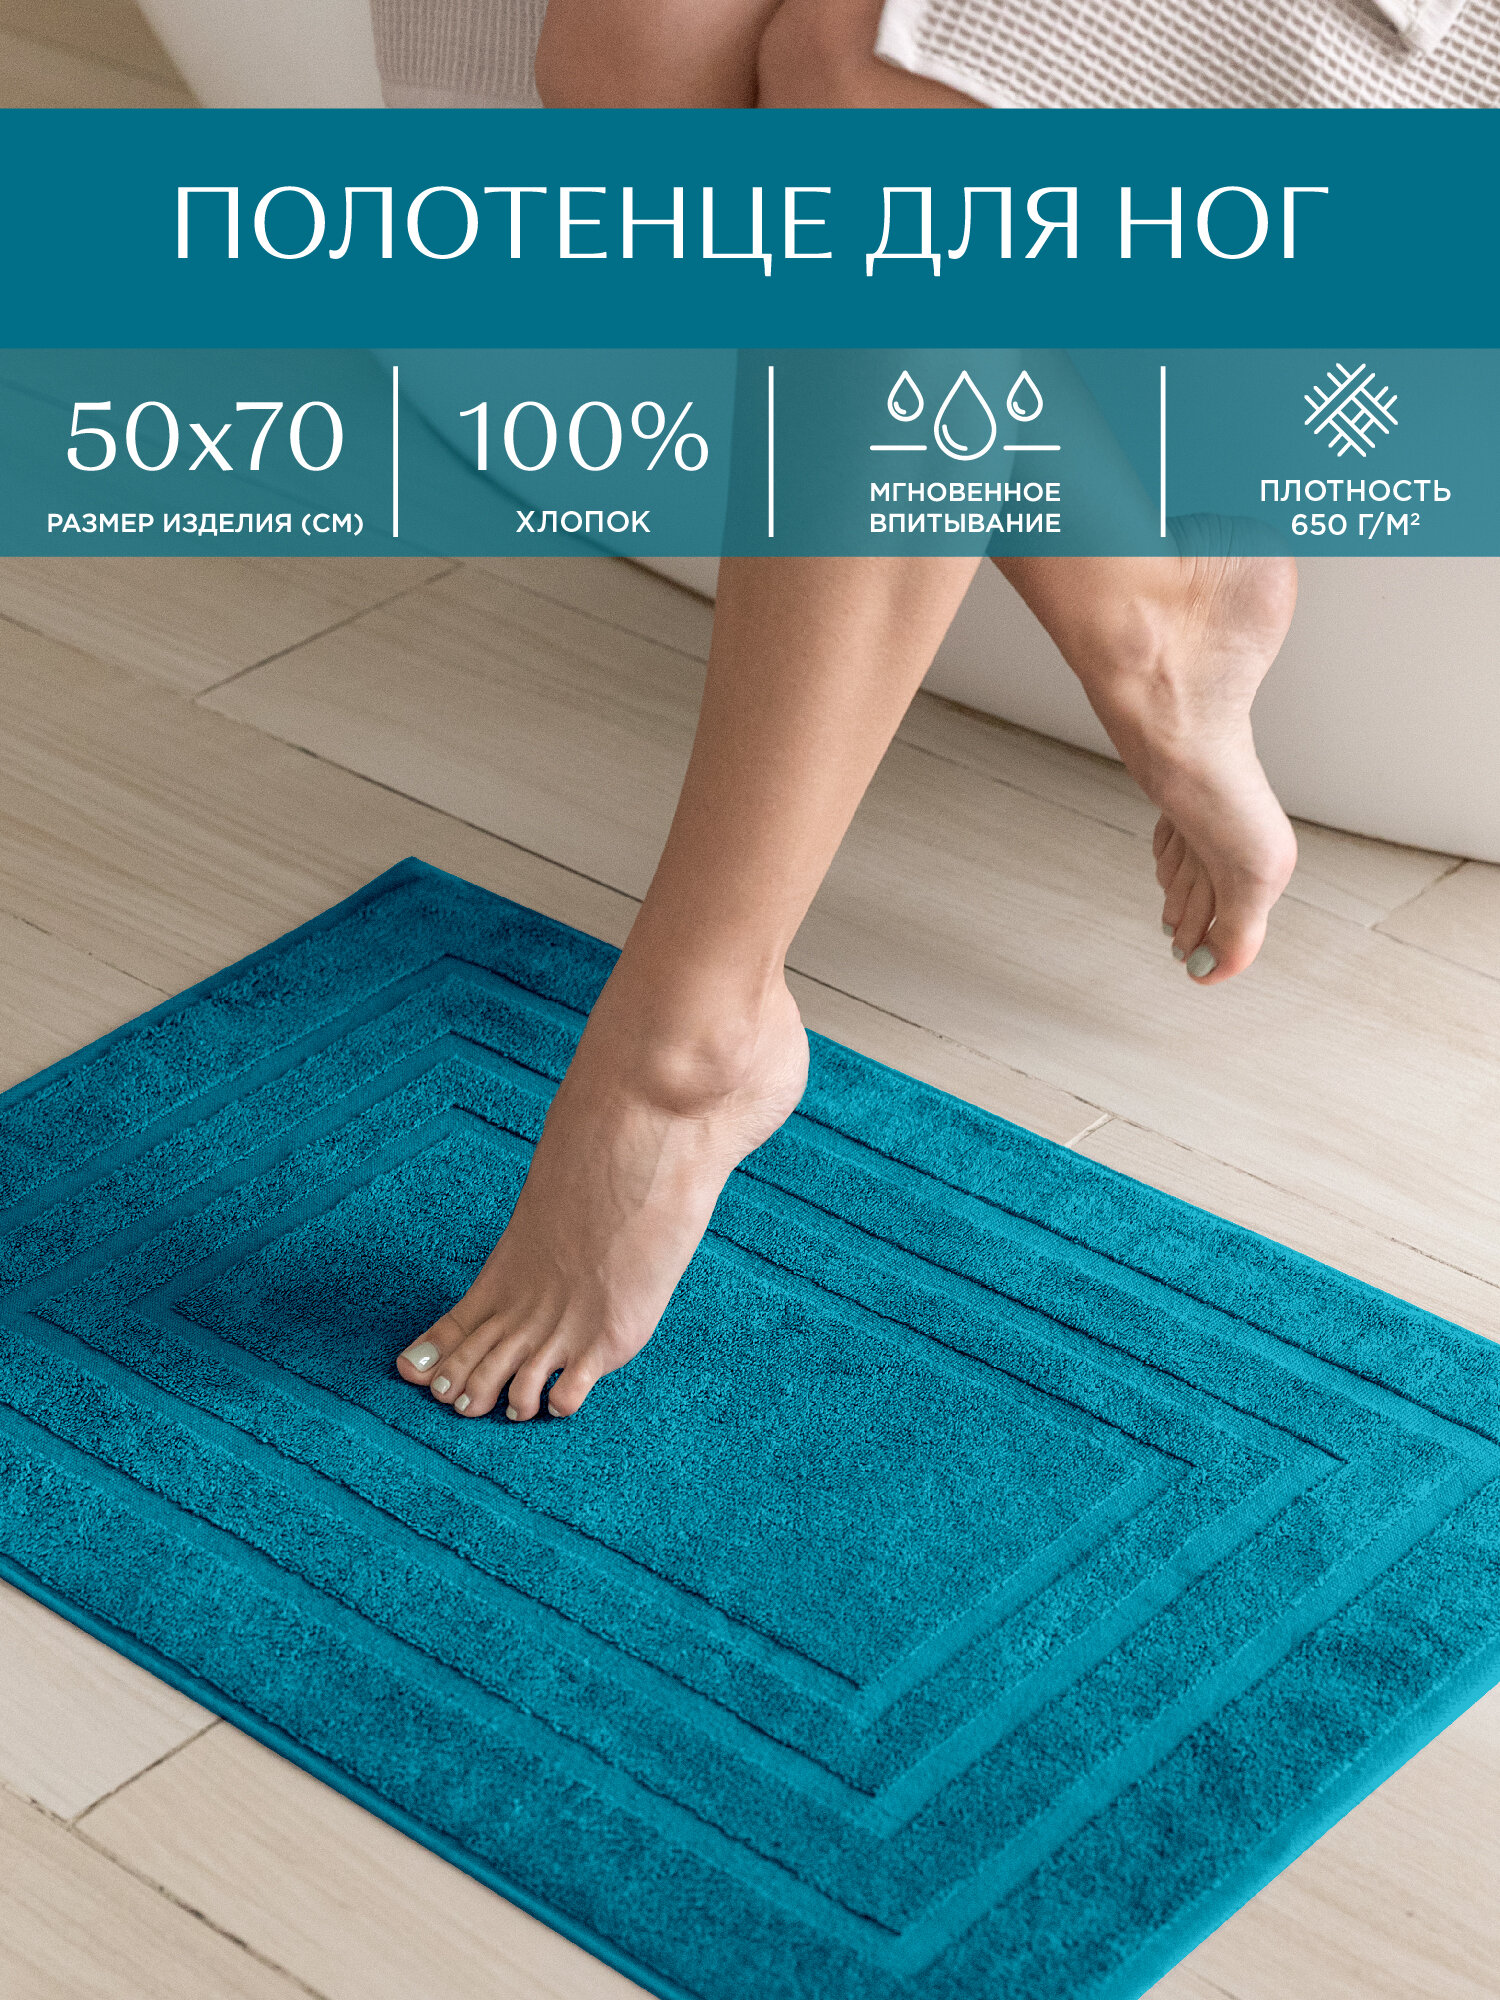 Полотенце махровое для ног 50х70 (коврик) Унисон Bolzano сине-зеленый